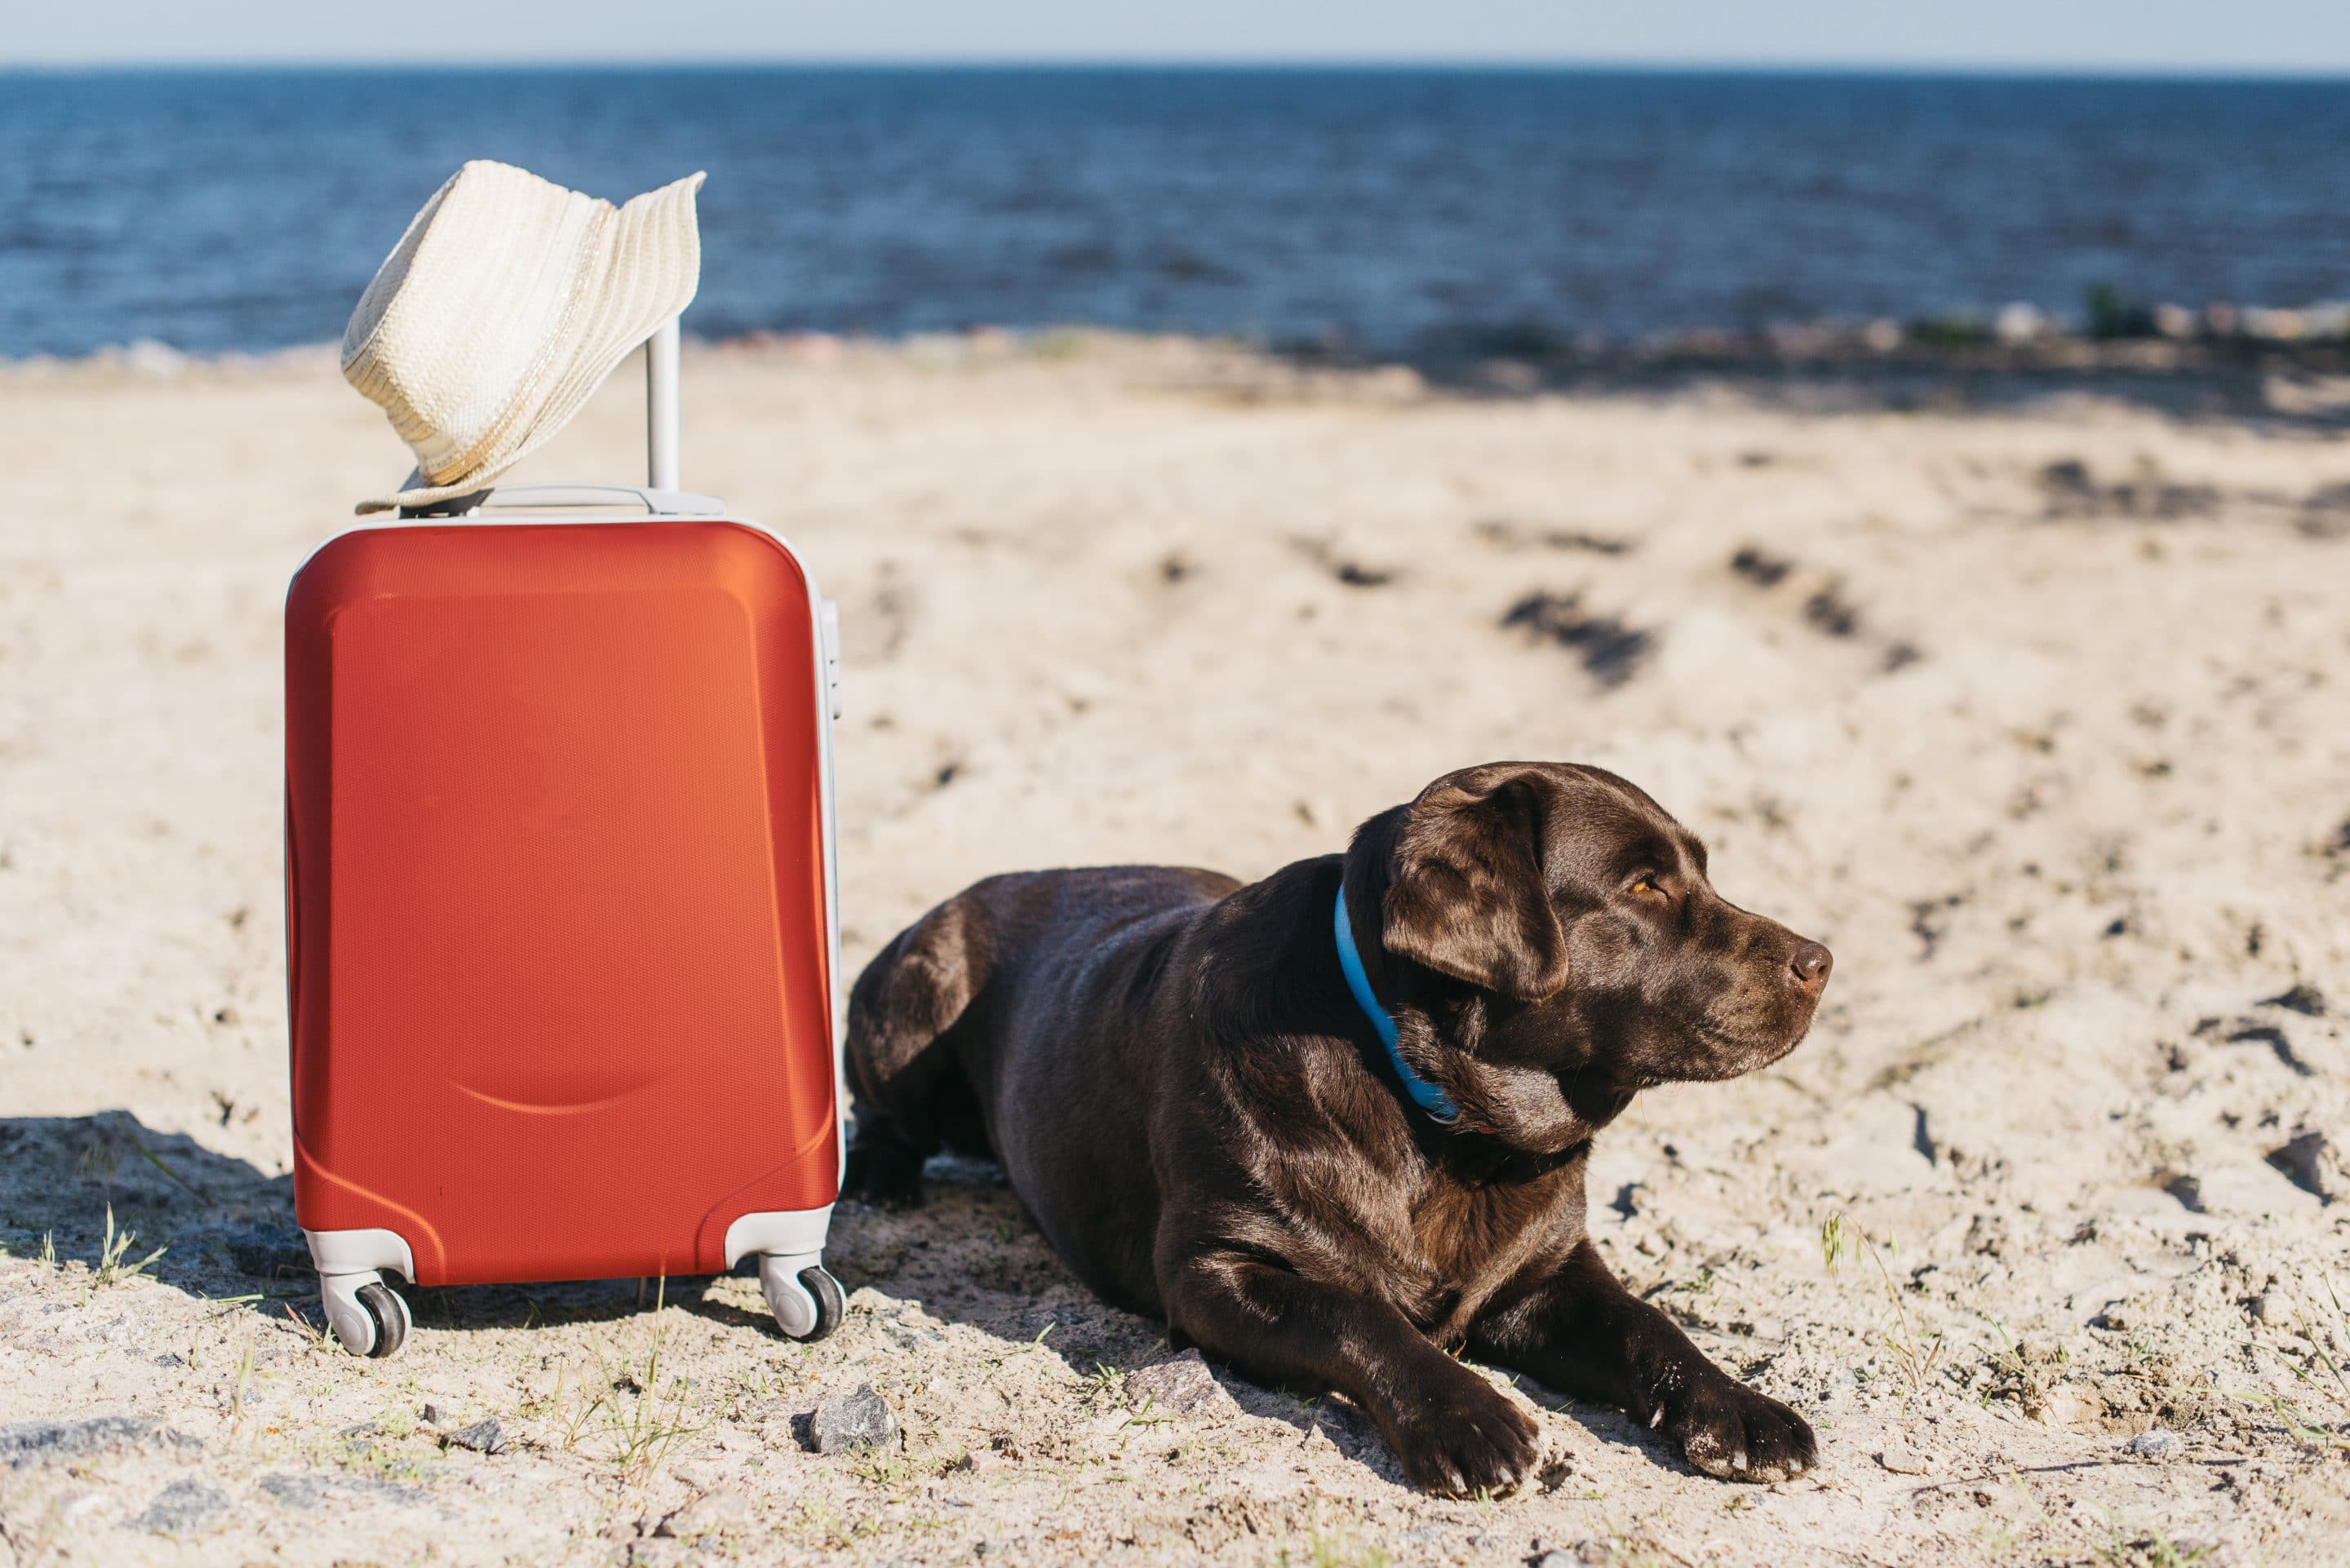 Vai viajar com seu cachorro? Esse post é para você!